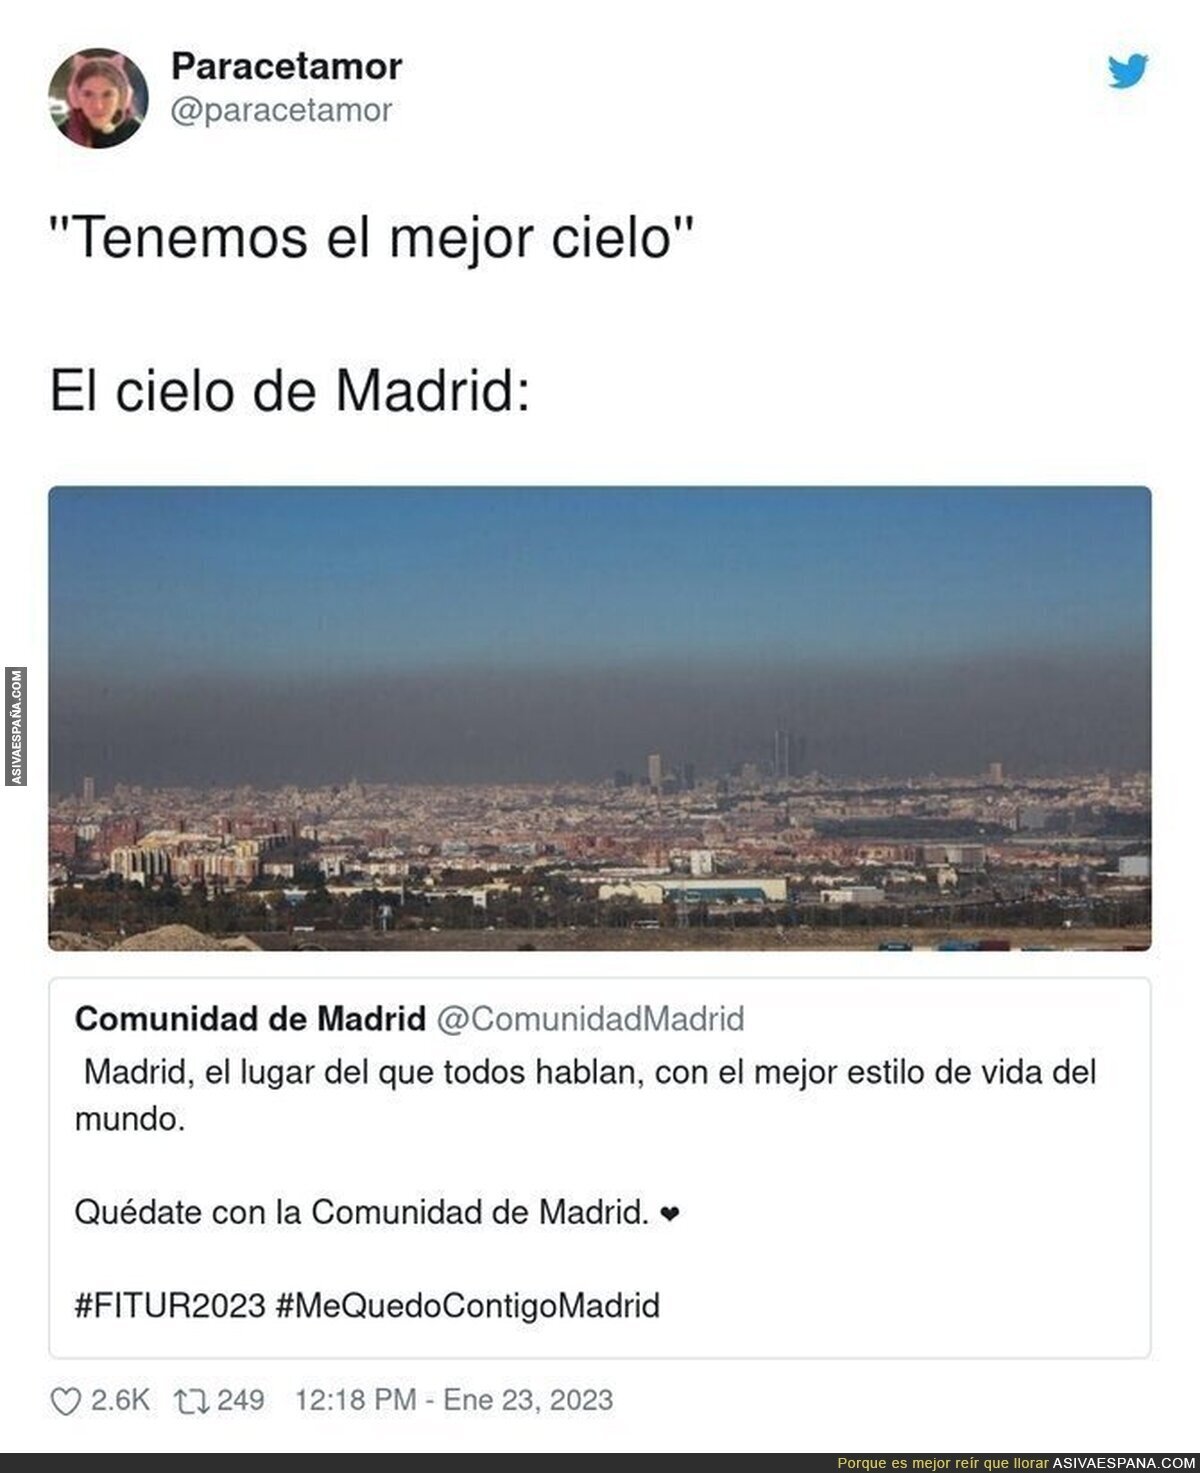 El cielo de Madrid asusta